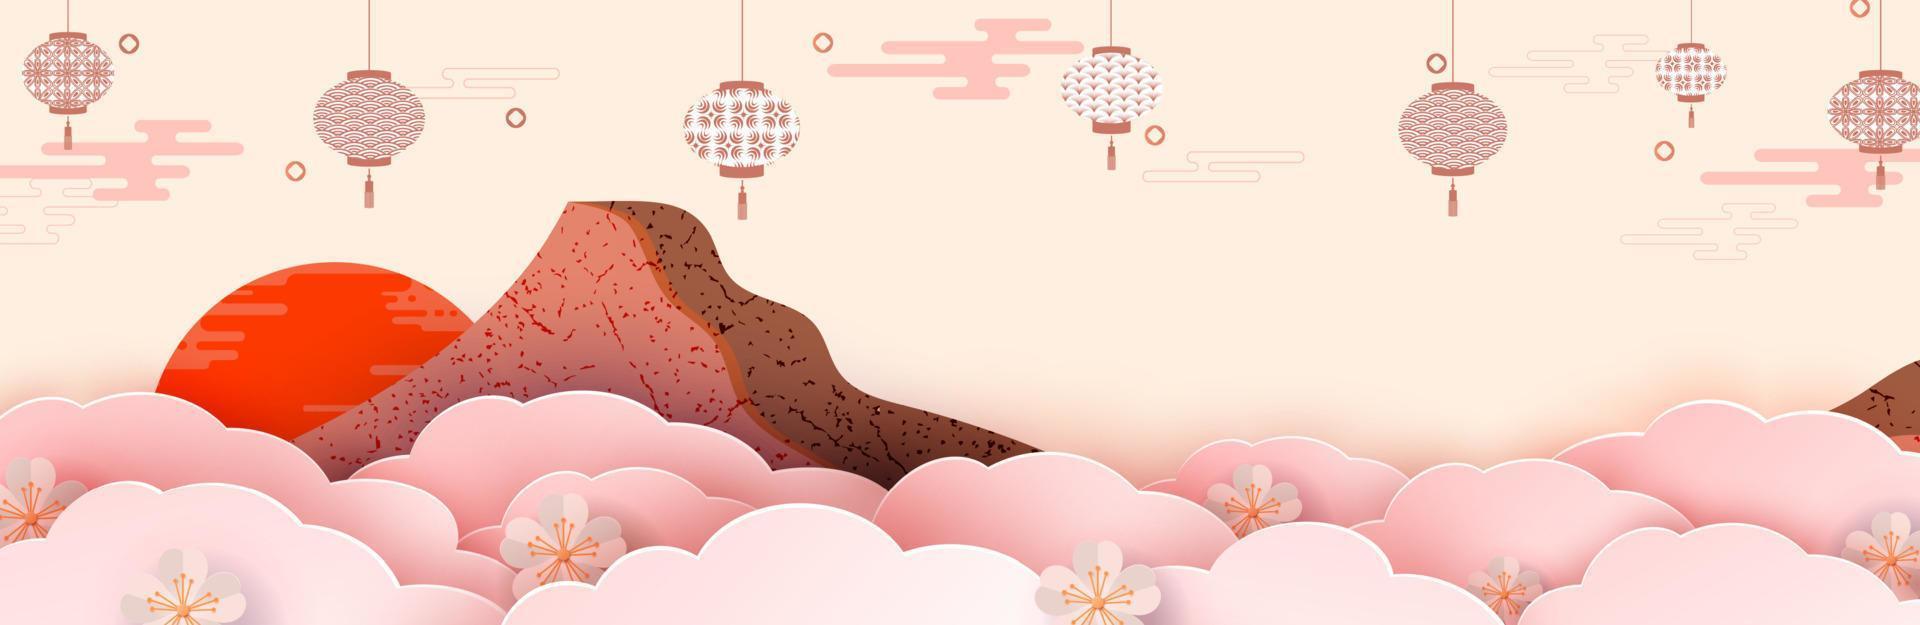 illustration av ett berg bland blommor, lyktor och moln. i förgrunden finns vårblommor. japanska och kinesiska mönster. platt stil. mall för ett julkort, banner, web page.vector vektor